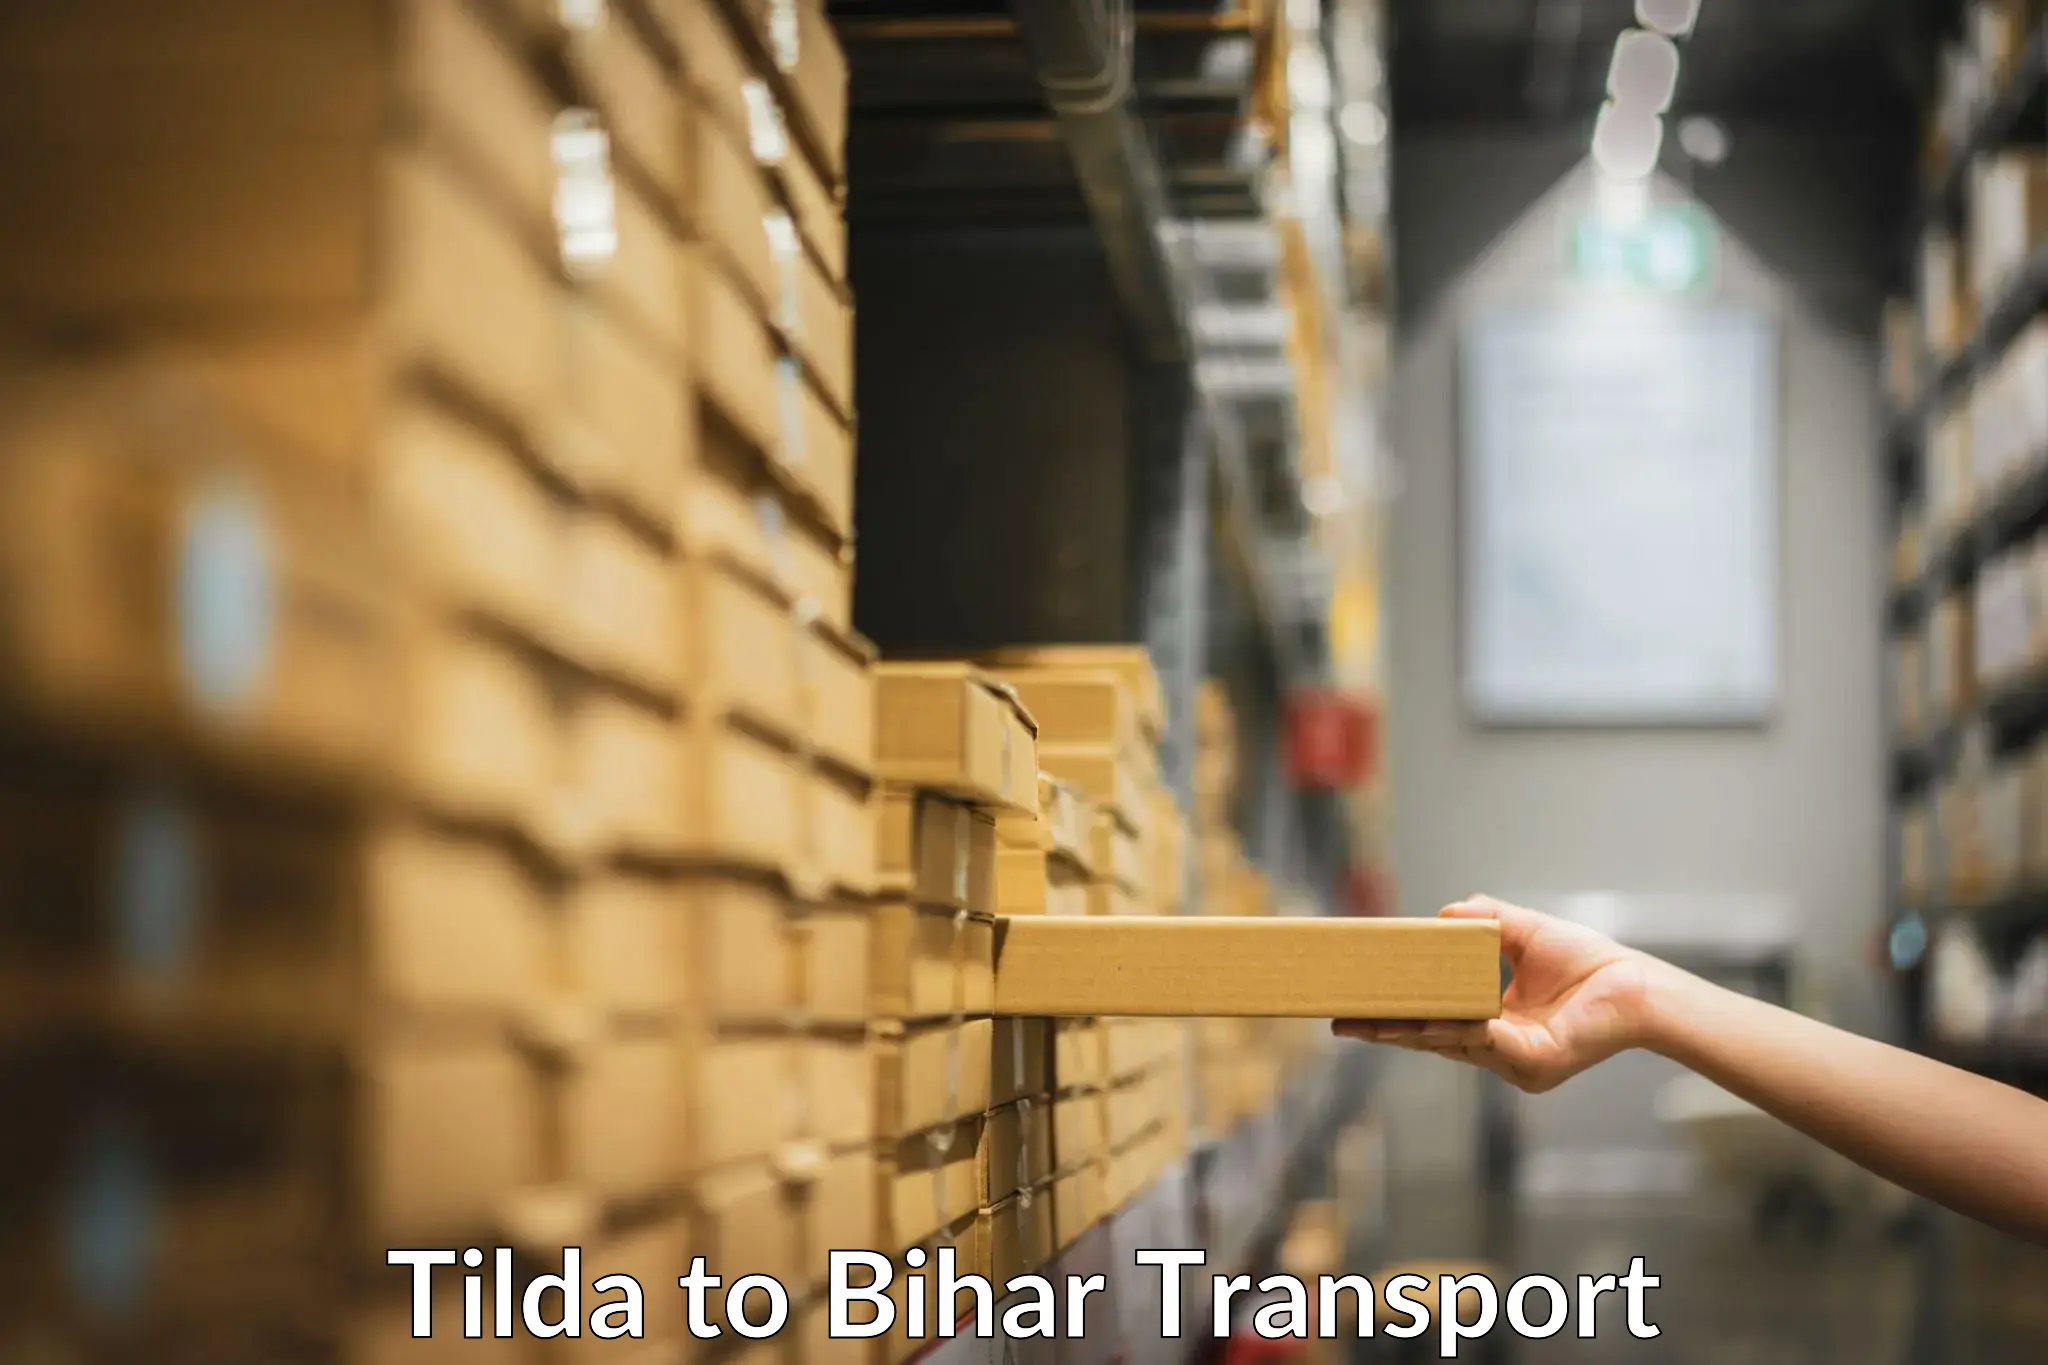 Furniture transport service Tilda to Sheonar